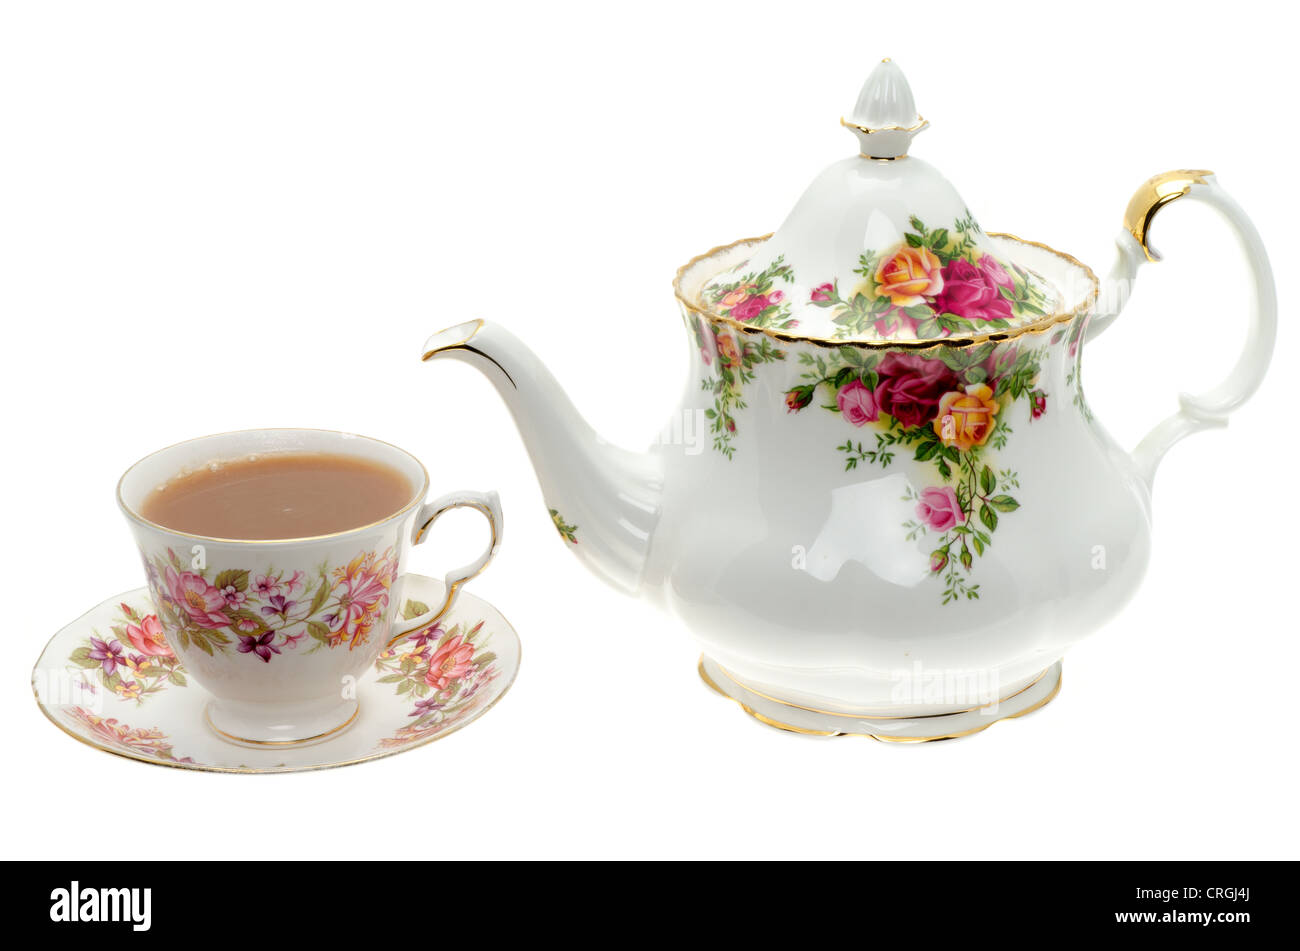 Théière porcelaine vintage avec une tasse de thé - studio photo avec un fond blanc Banque D'Images